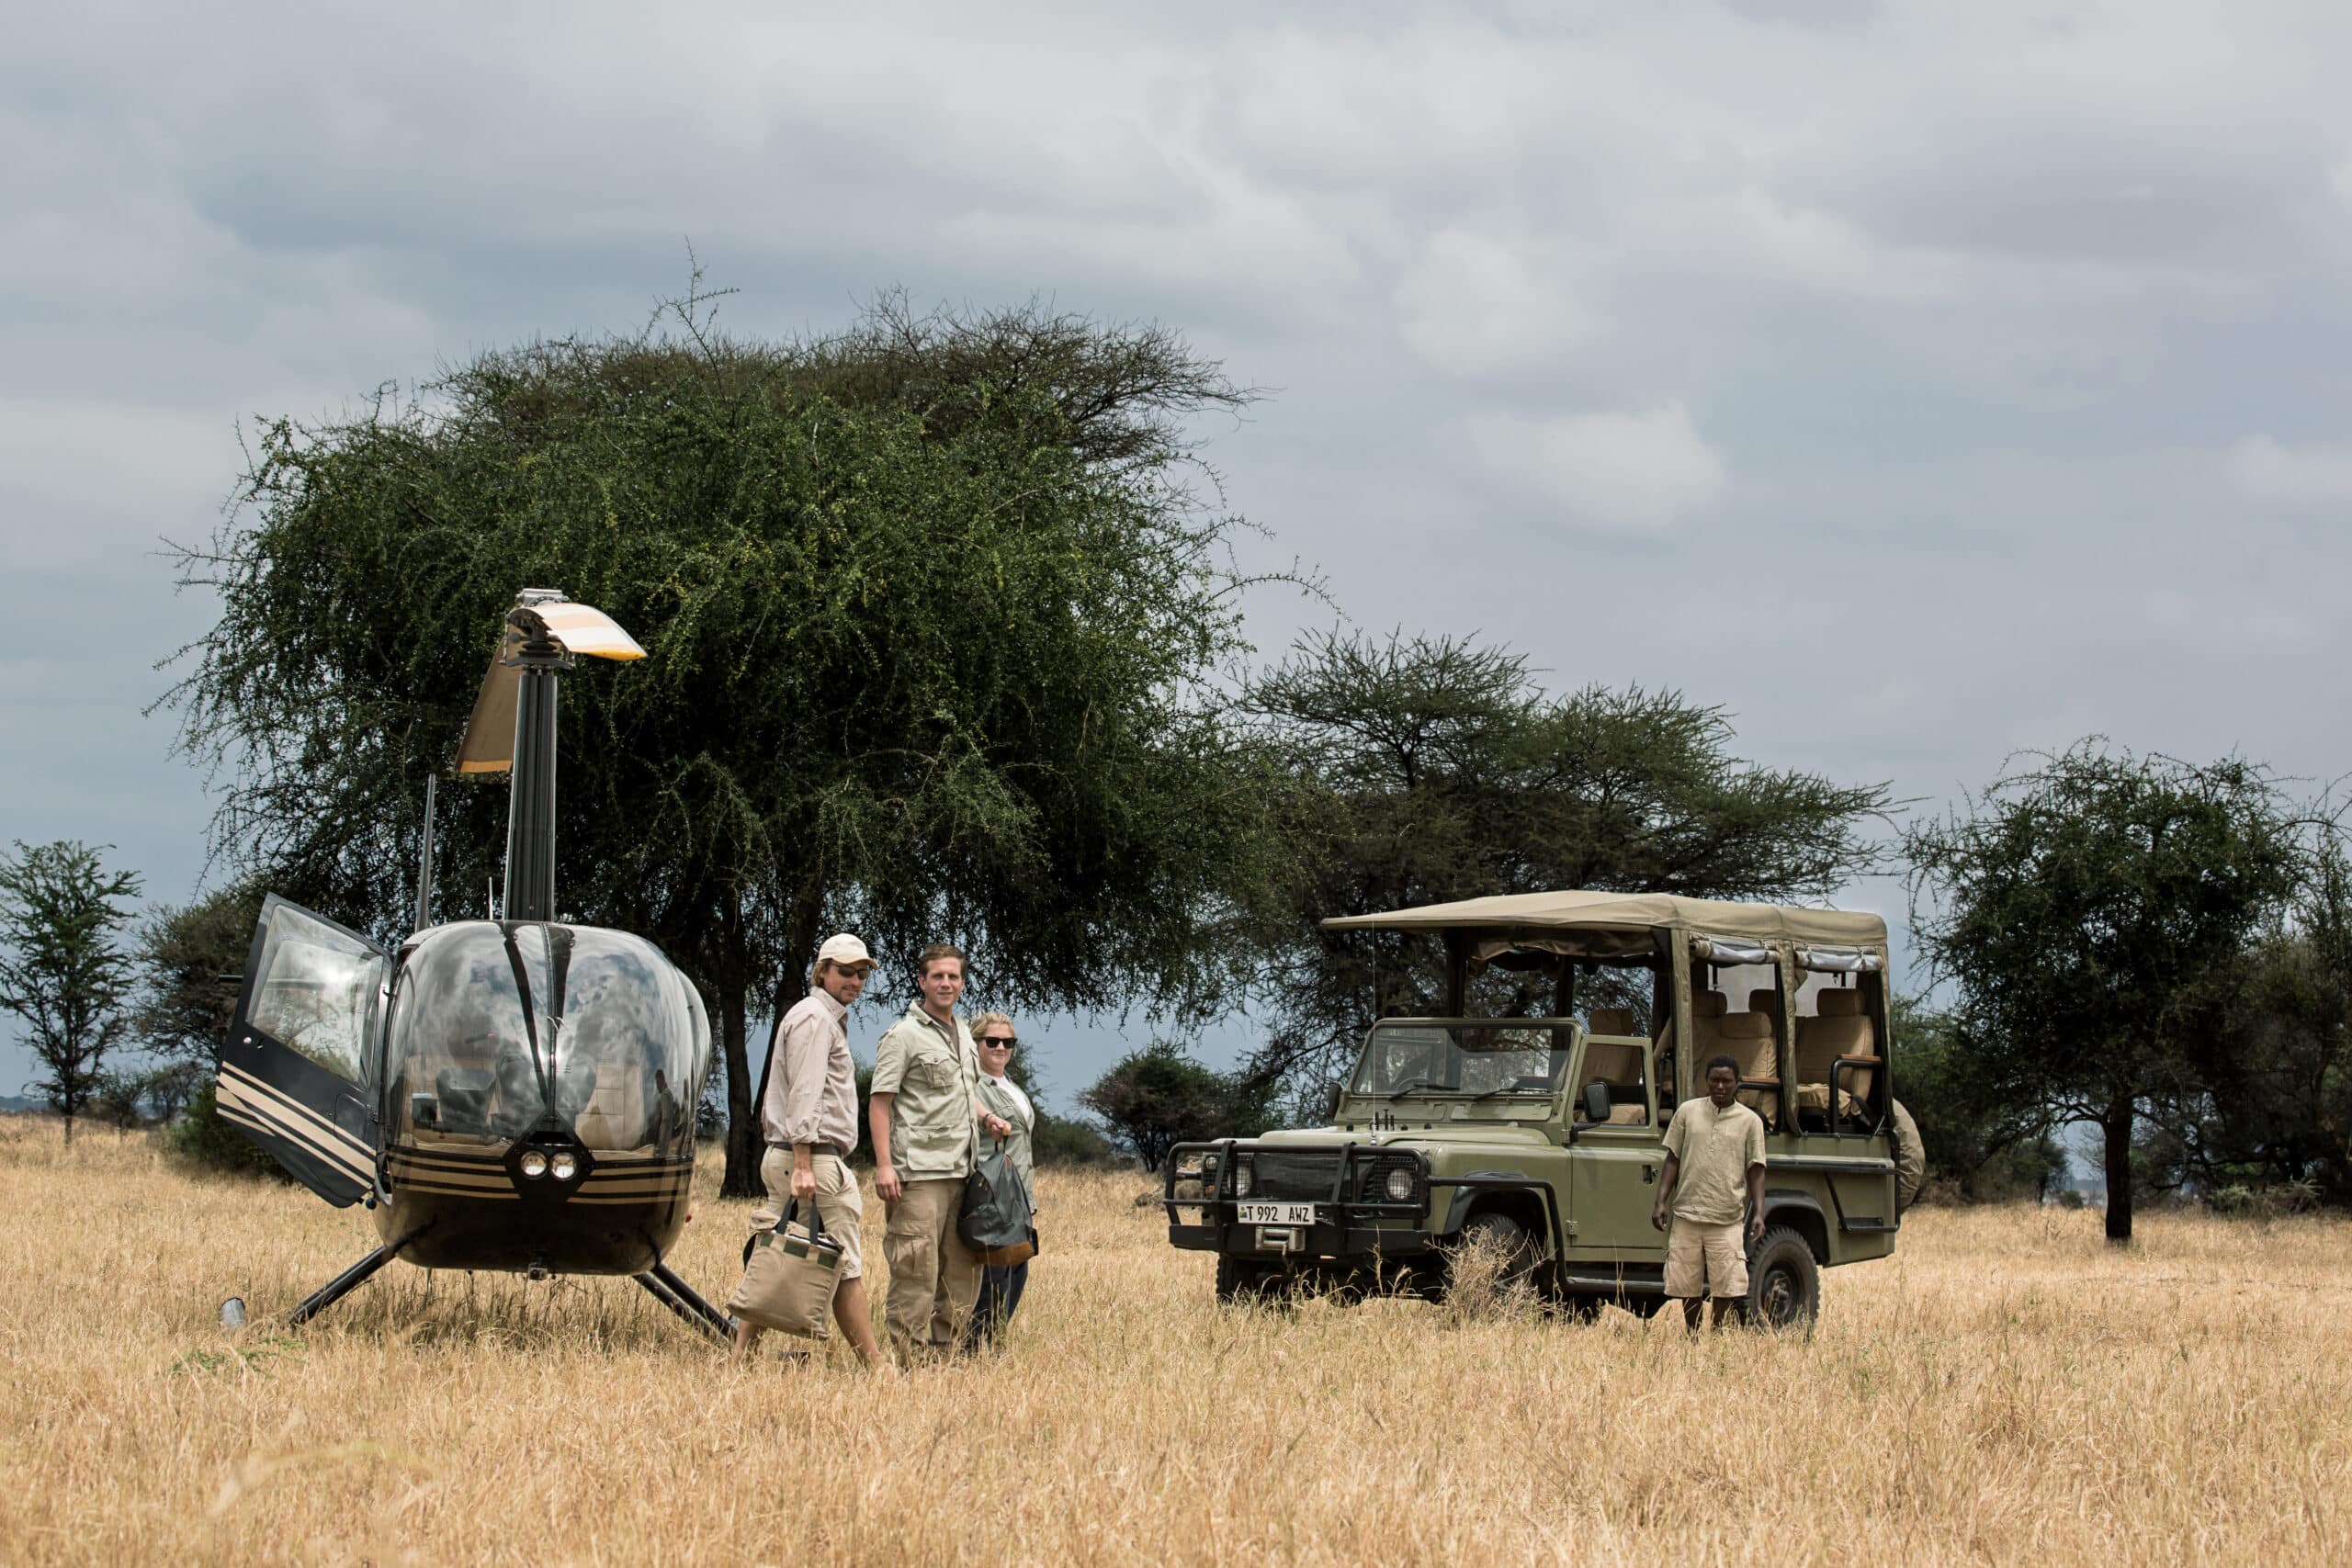 Activités de safari en hélicoptère et en 4x4 dans la savane en pleine nature en Tanzanie.